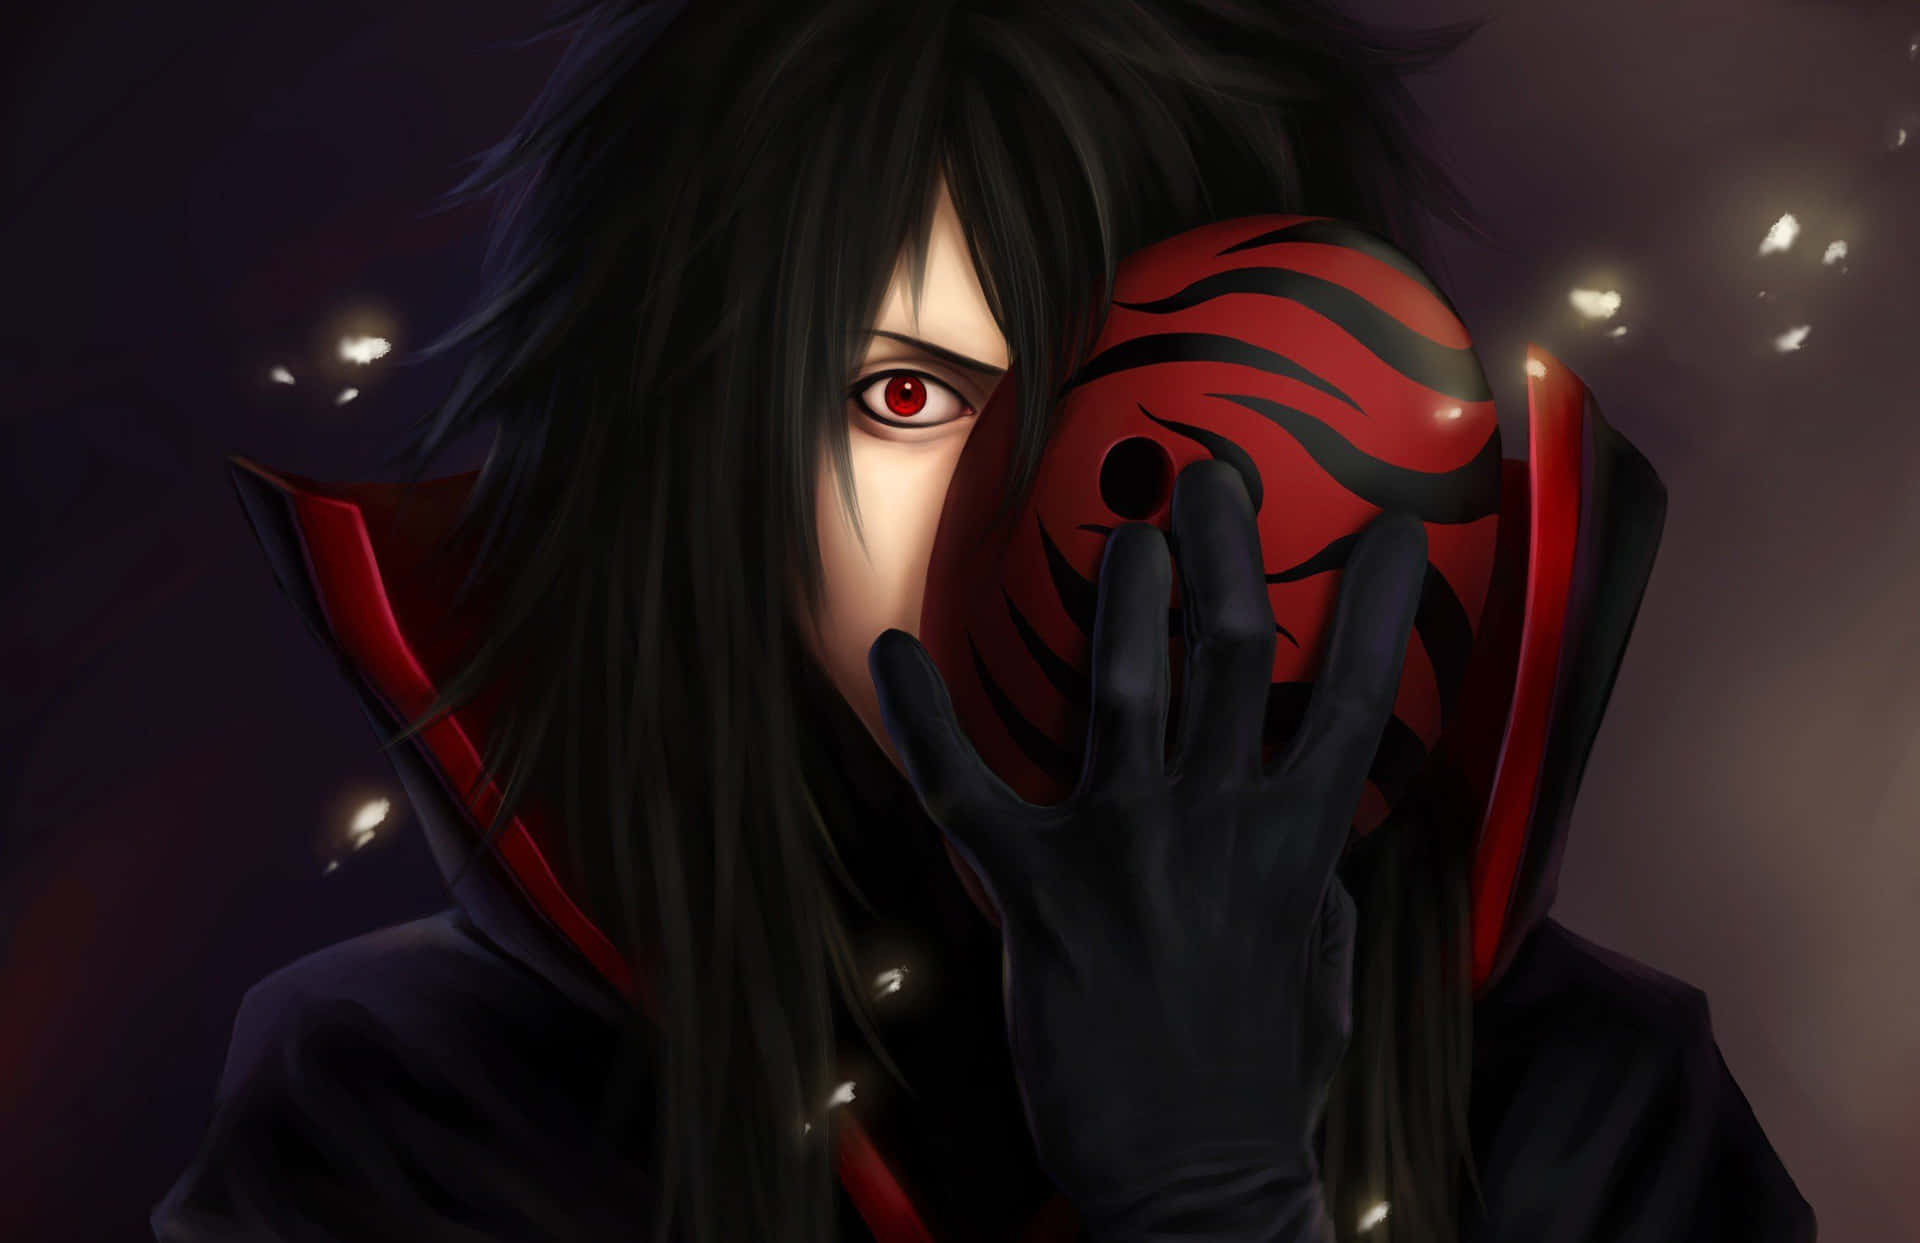 Unpersonaje De Anime Negro Y Rojo Con Cabello Largo Que Cubre Su Rostro Fondo de pantalla